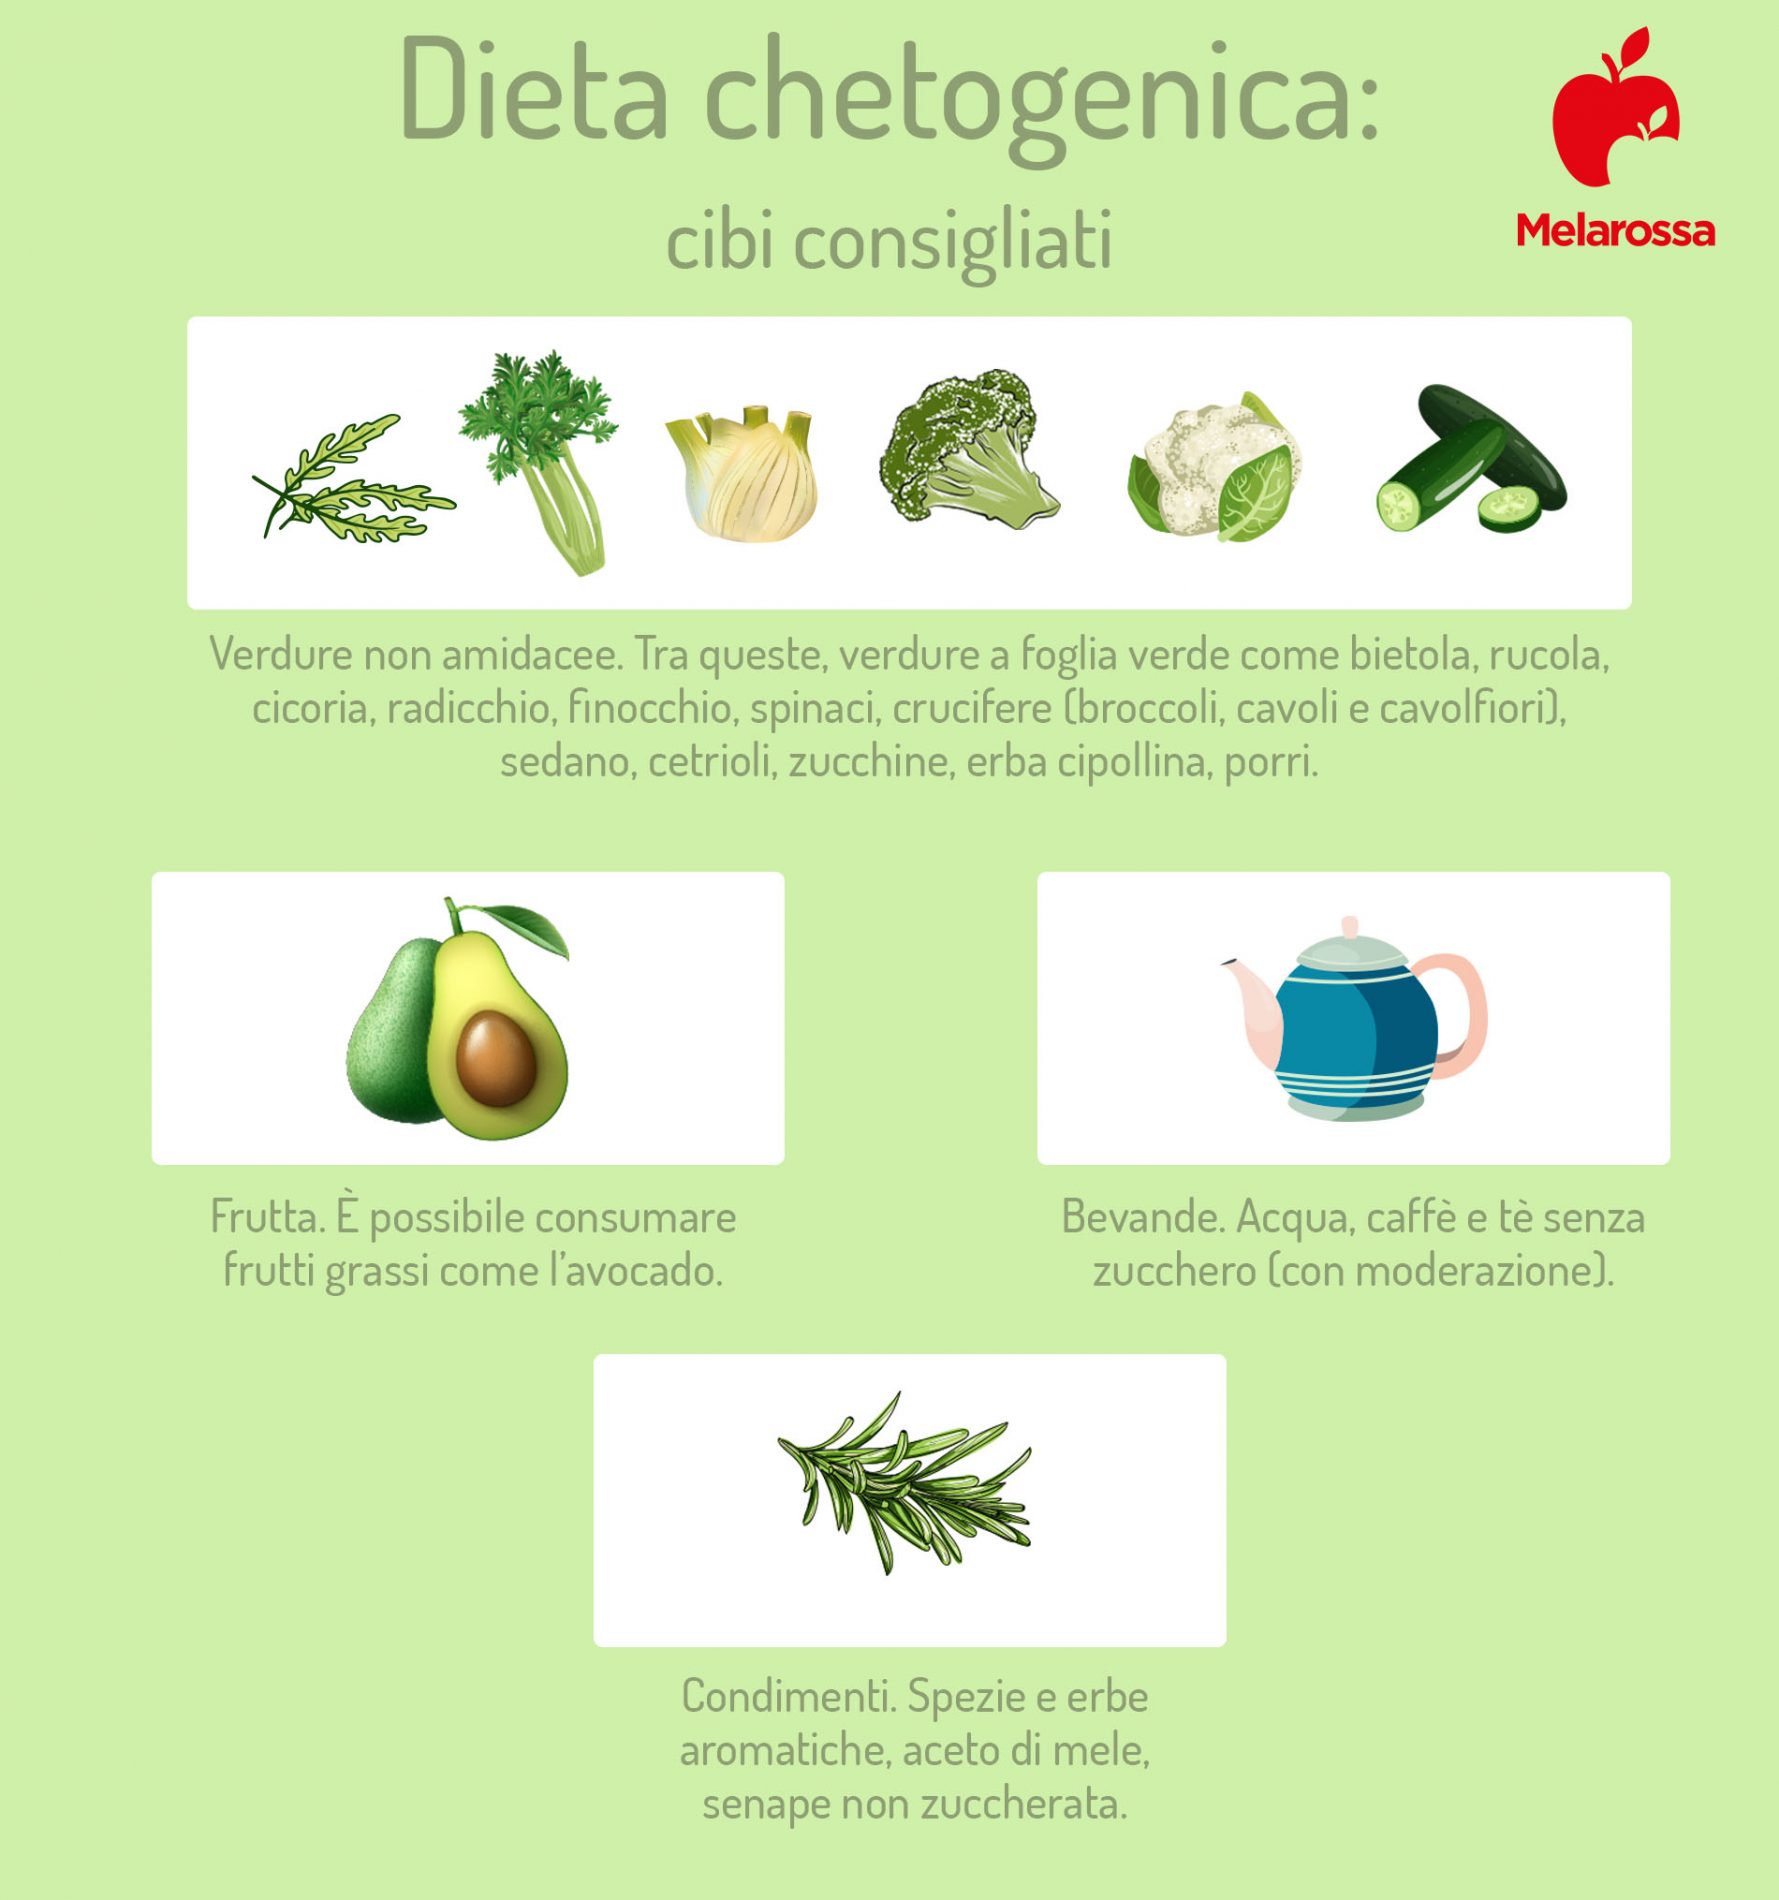 dieta chetogenica: cibi consigliati